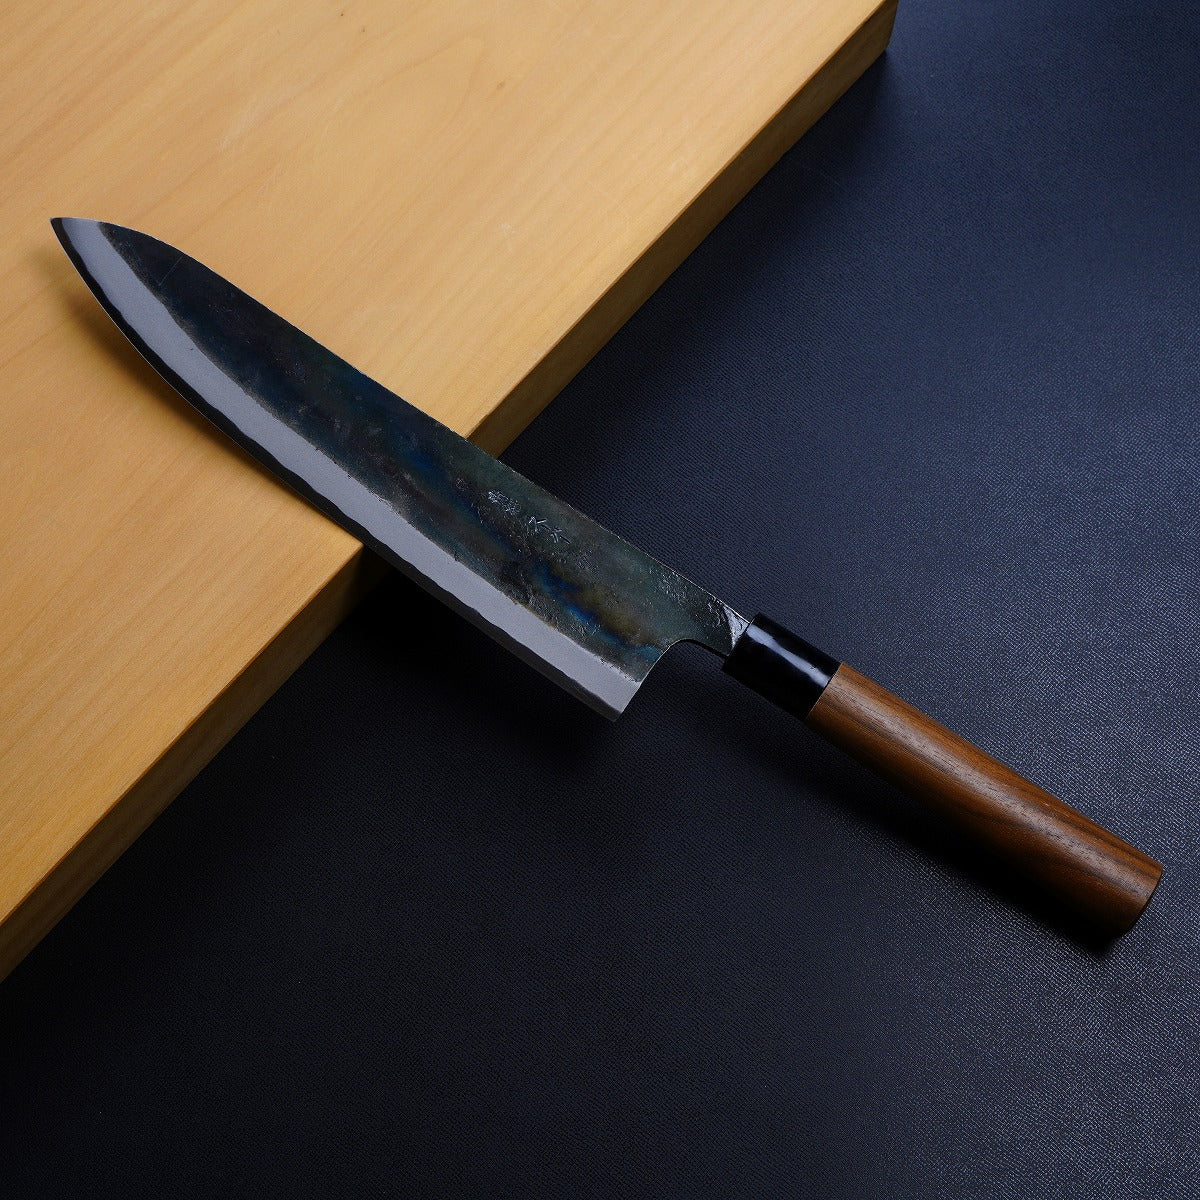 "KIYOKANE" Gyuto Kurouchi (Chef's Knife) Aogami Super Steel, 210mm~240mm